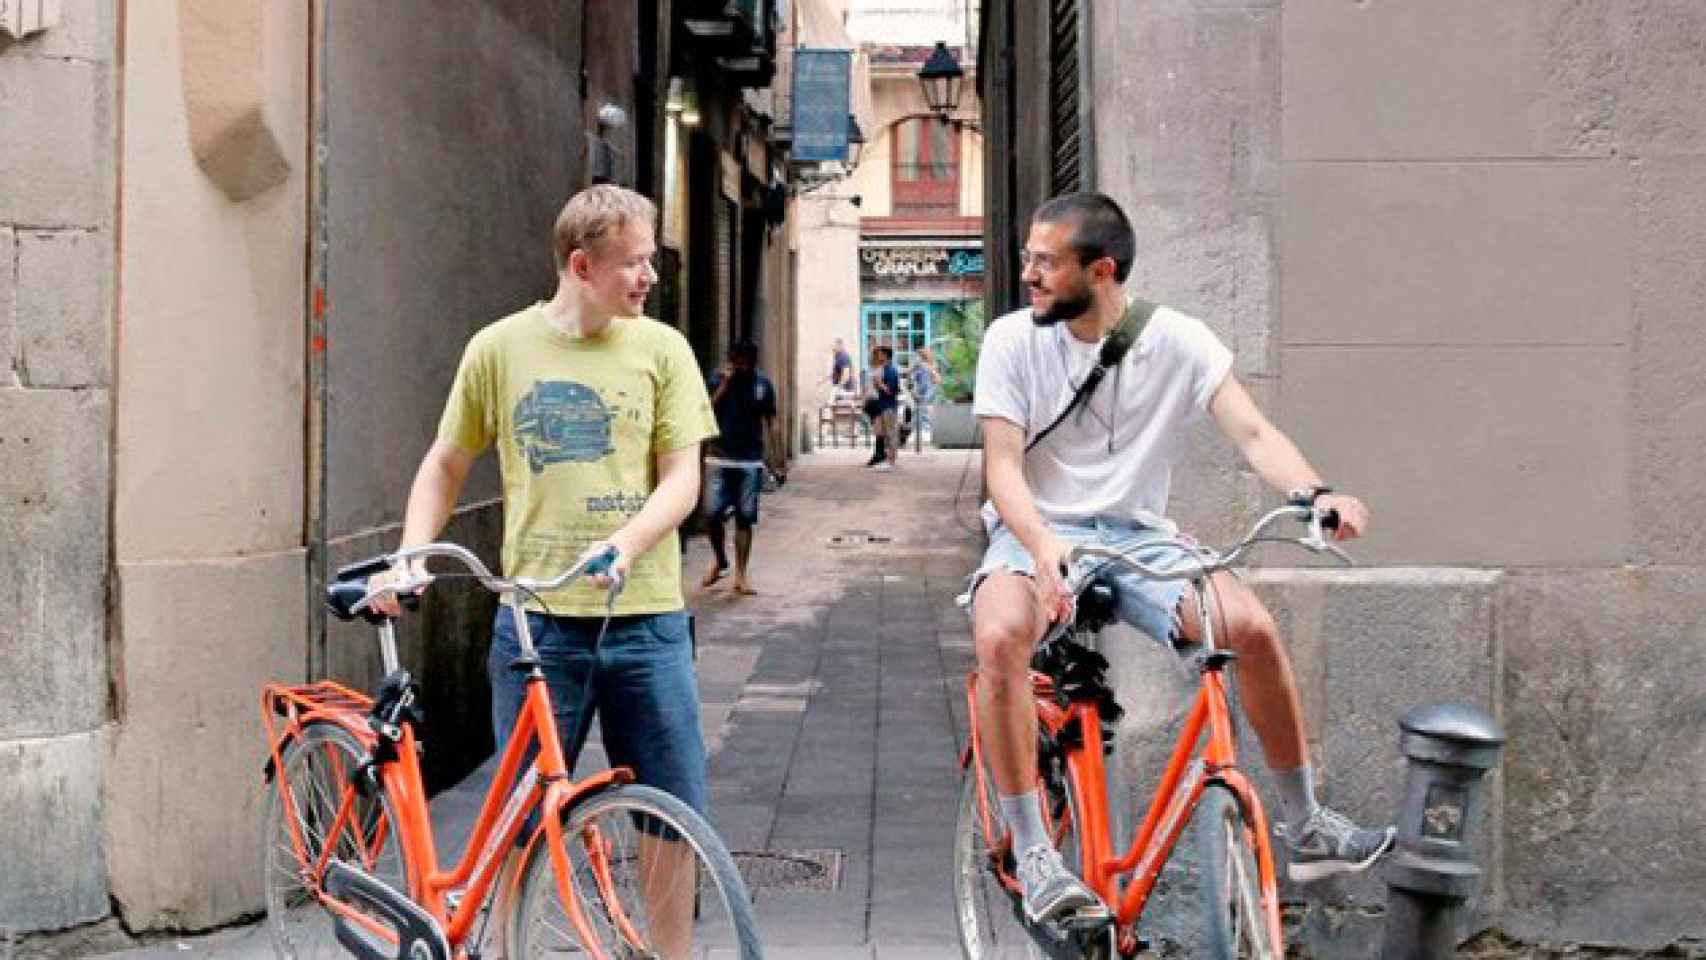 Dos usuarios de Donkey Republic en el barrio barcelonés de Ciutat Vella / CG